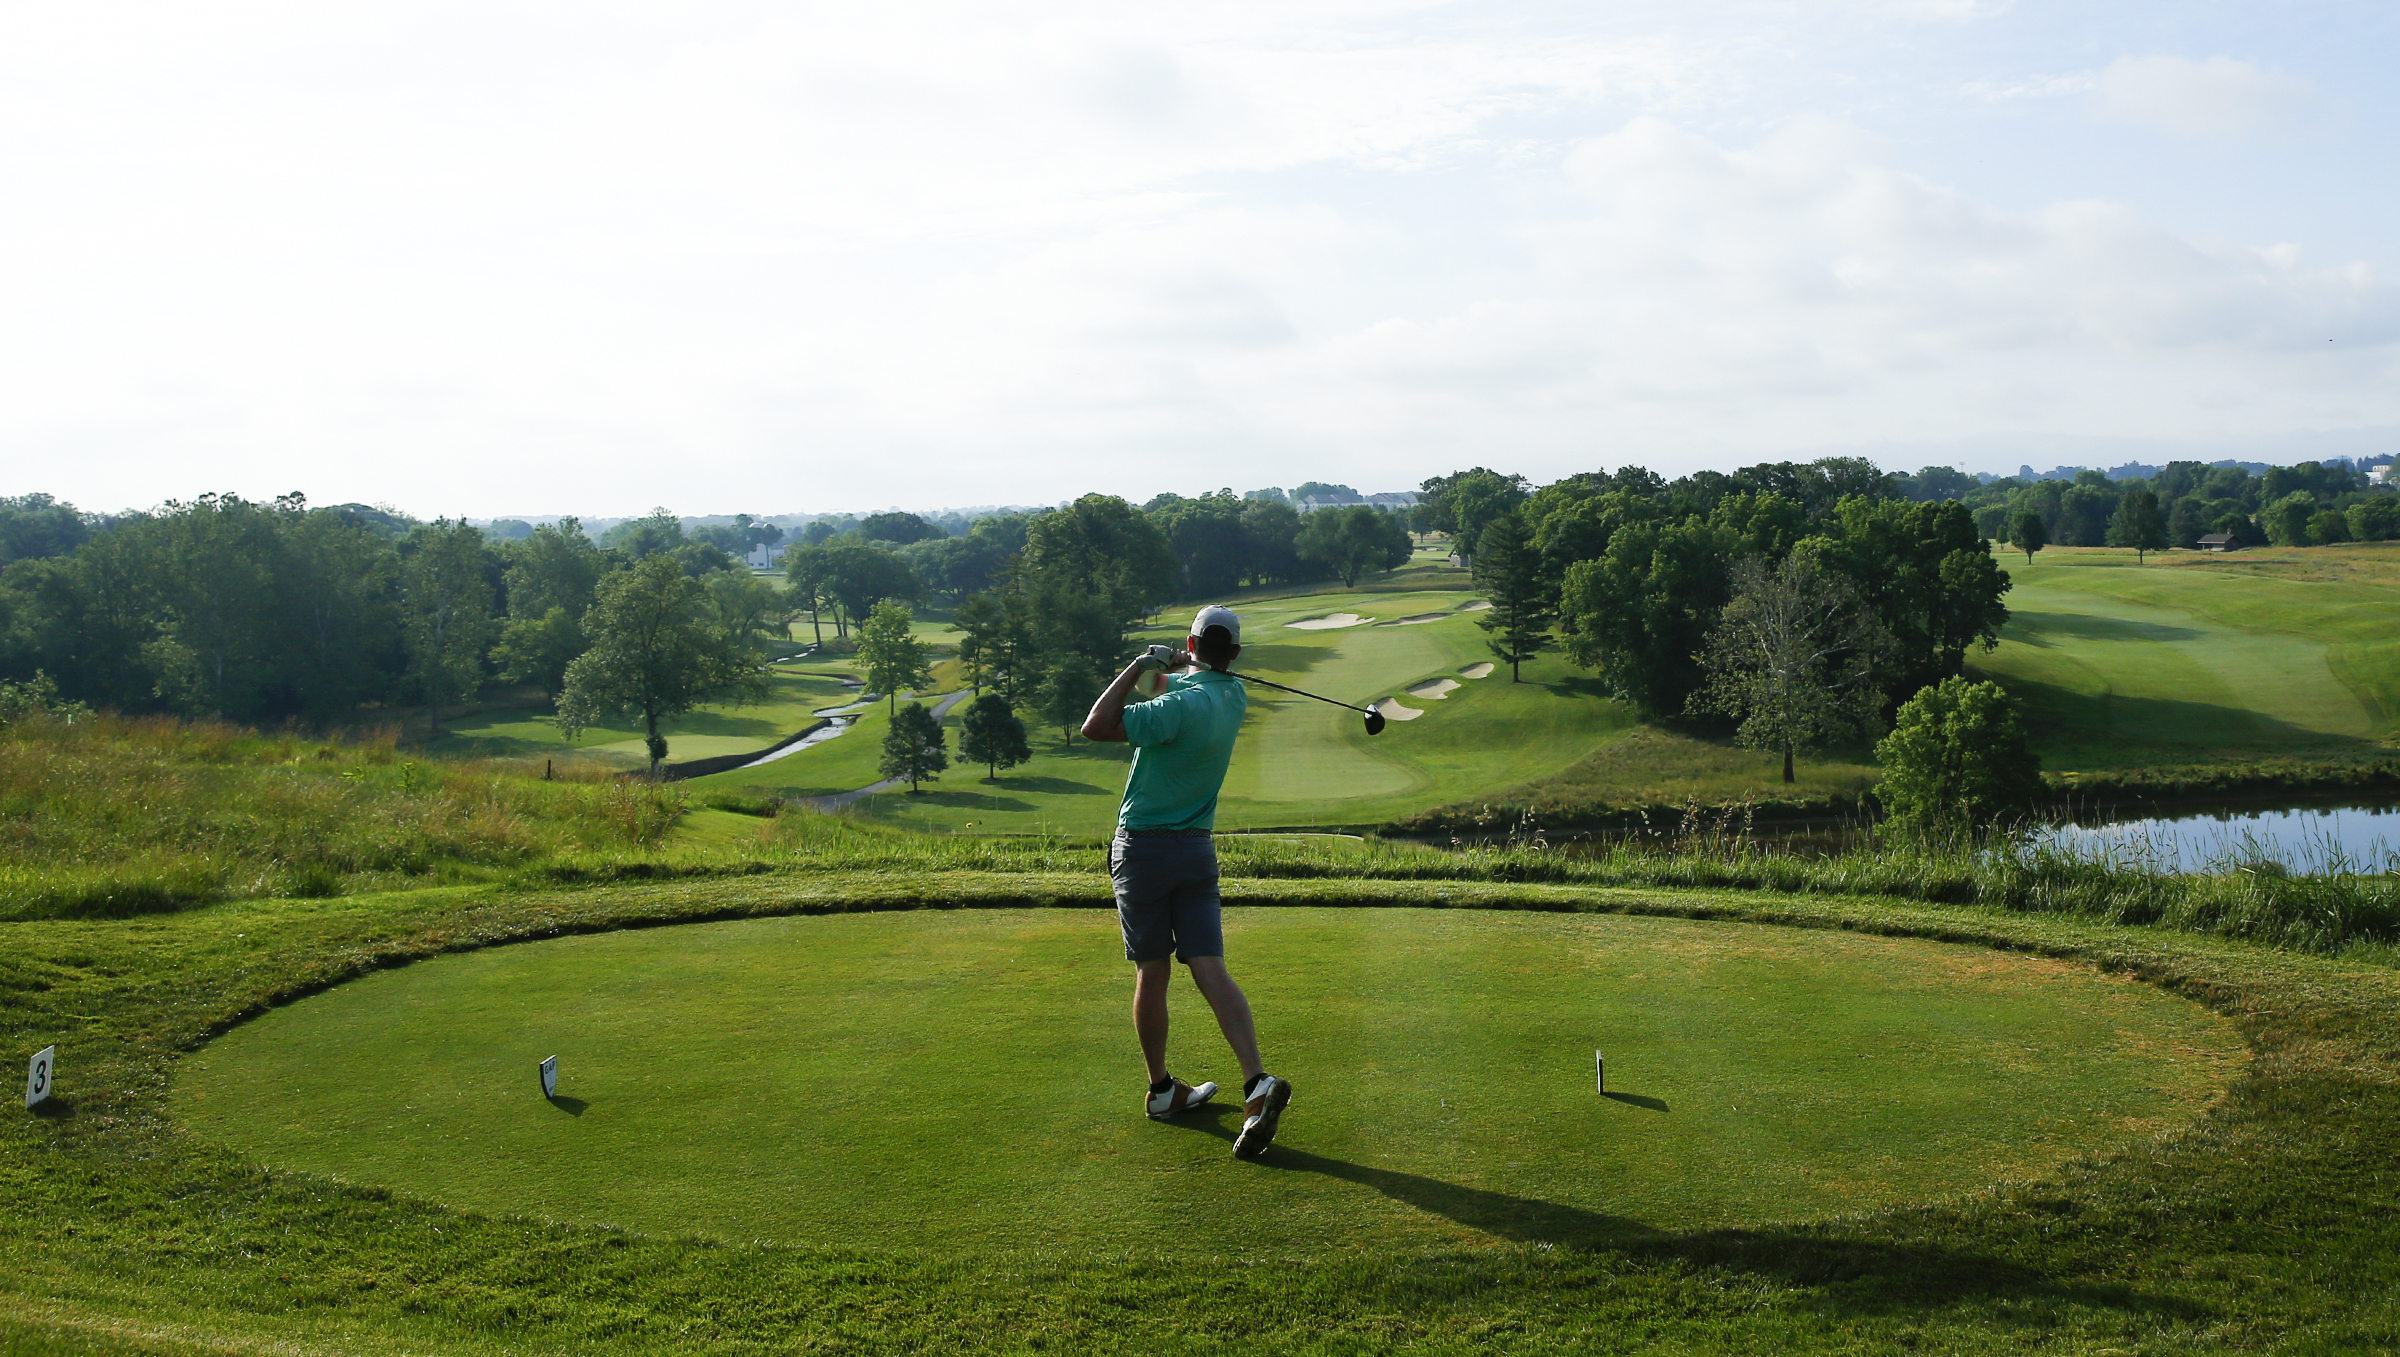 Philadelphia Amateur Championship golf tournament held without spectators